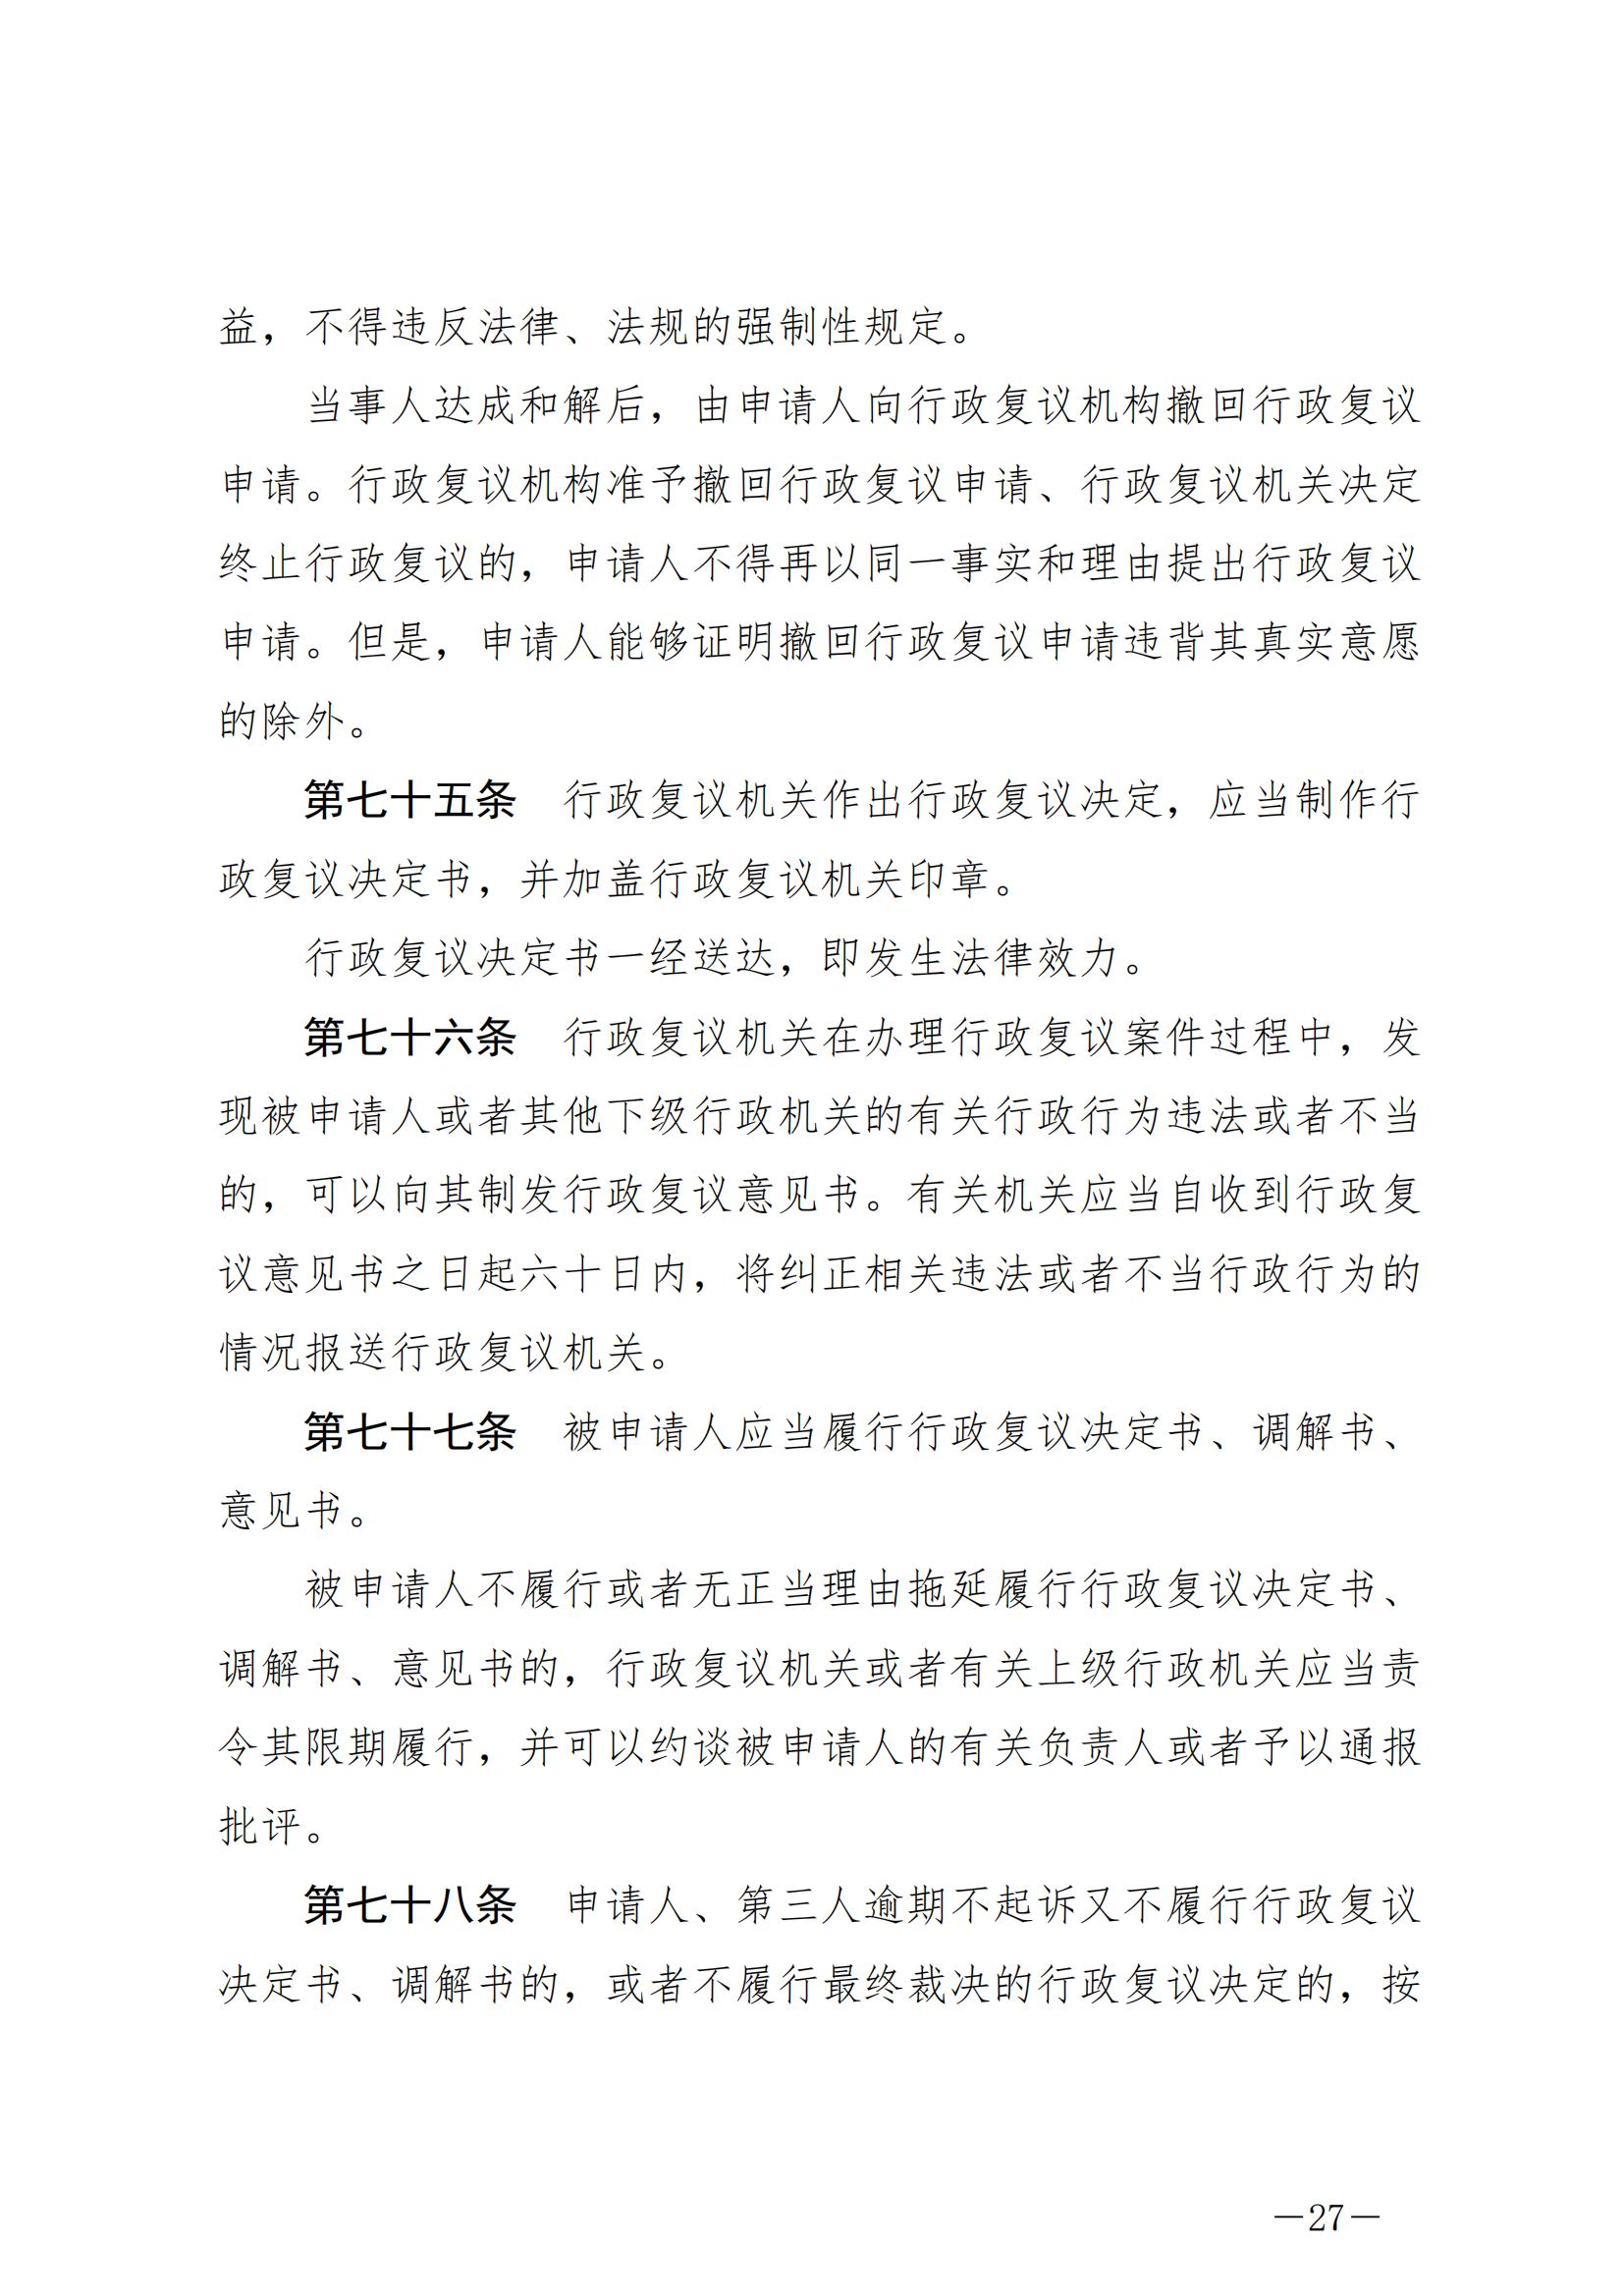 《中华人民共和国行政复议法》_20231204154310_26.jpg